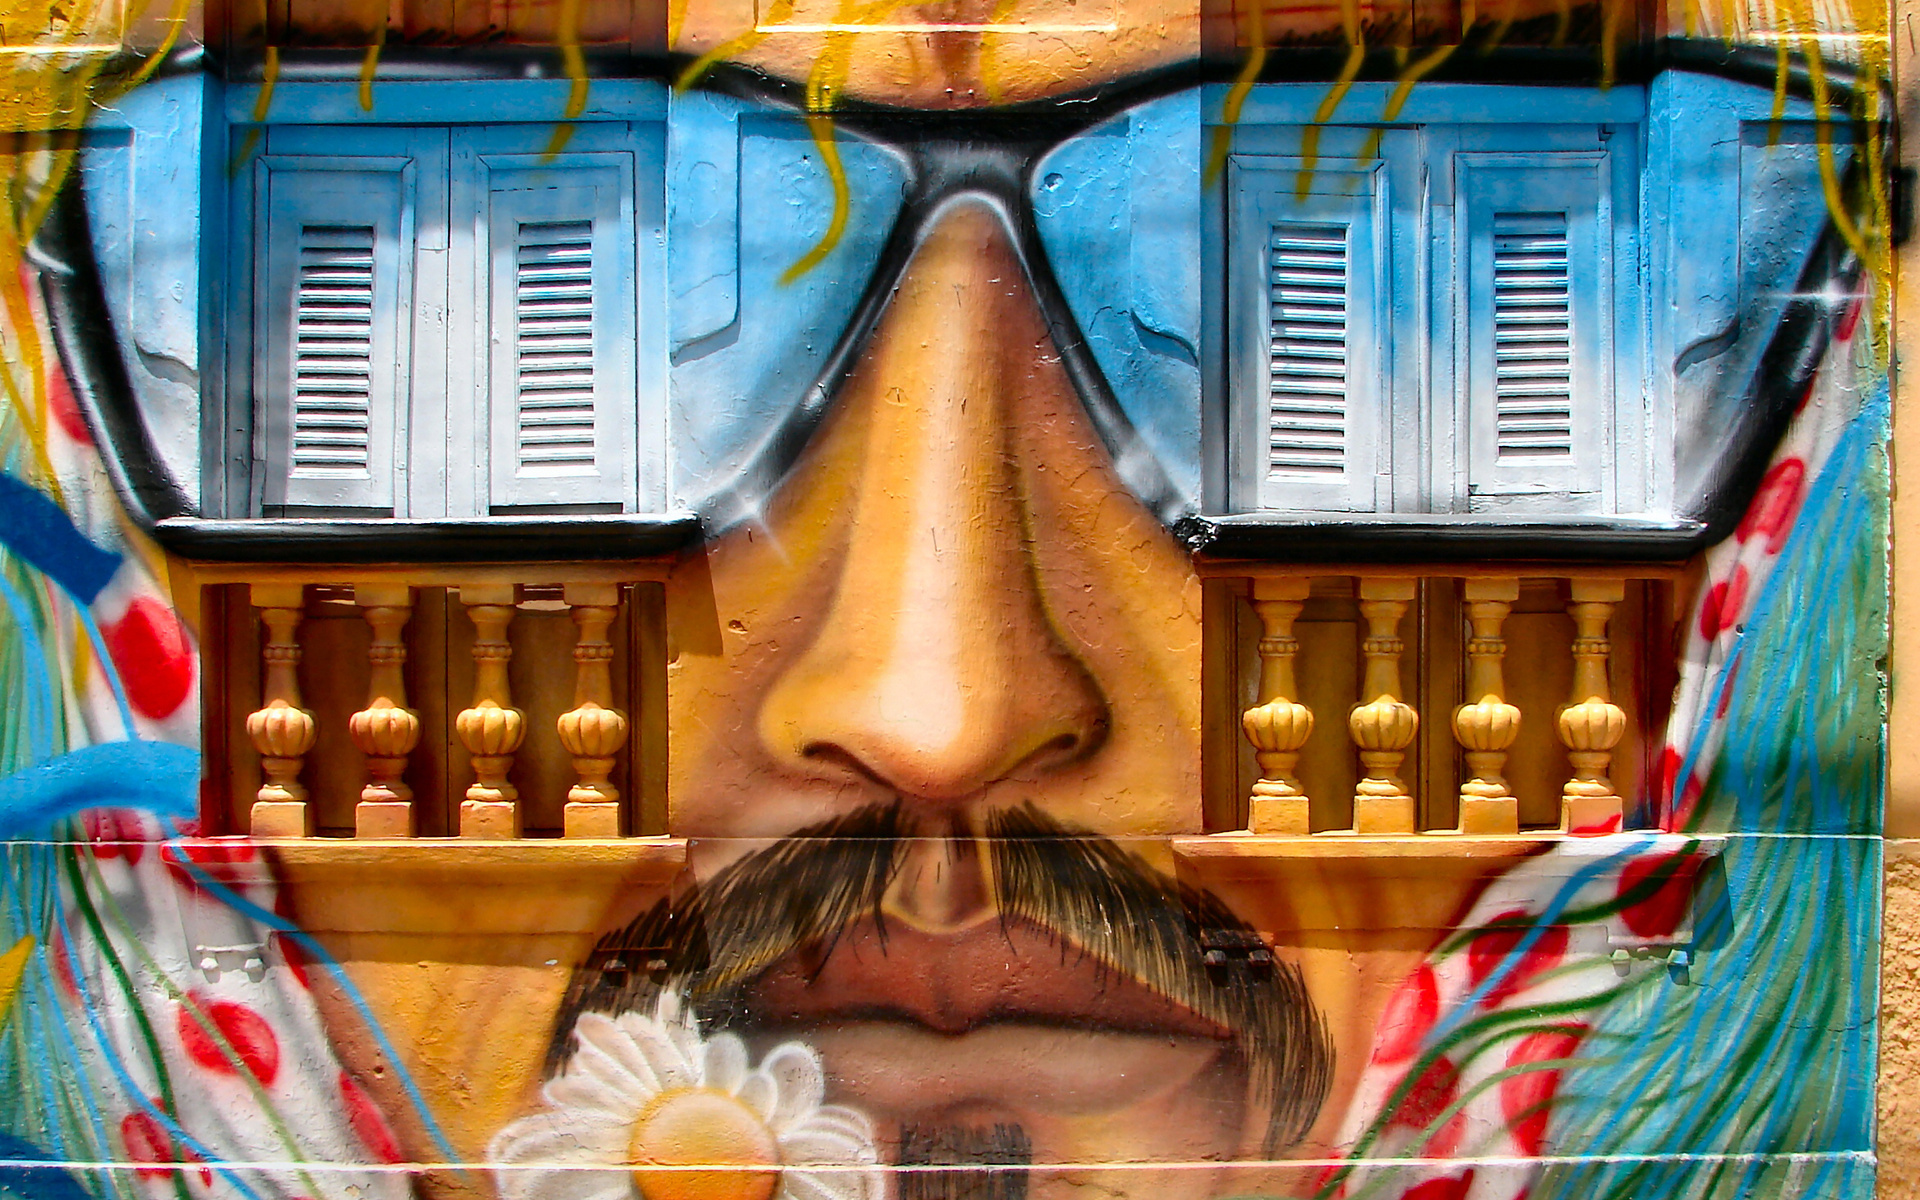 graffiti, Face, Glasses, Urban, Paint, Buildings Wallpaper